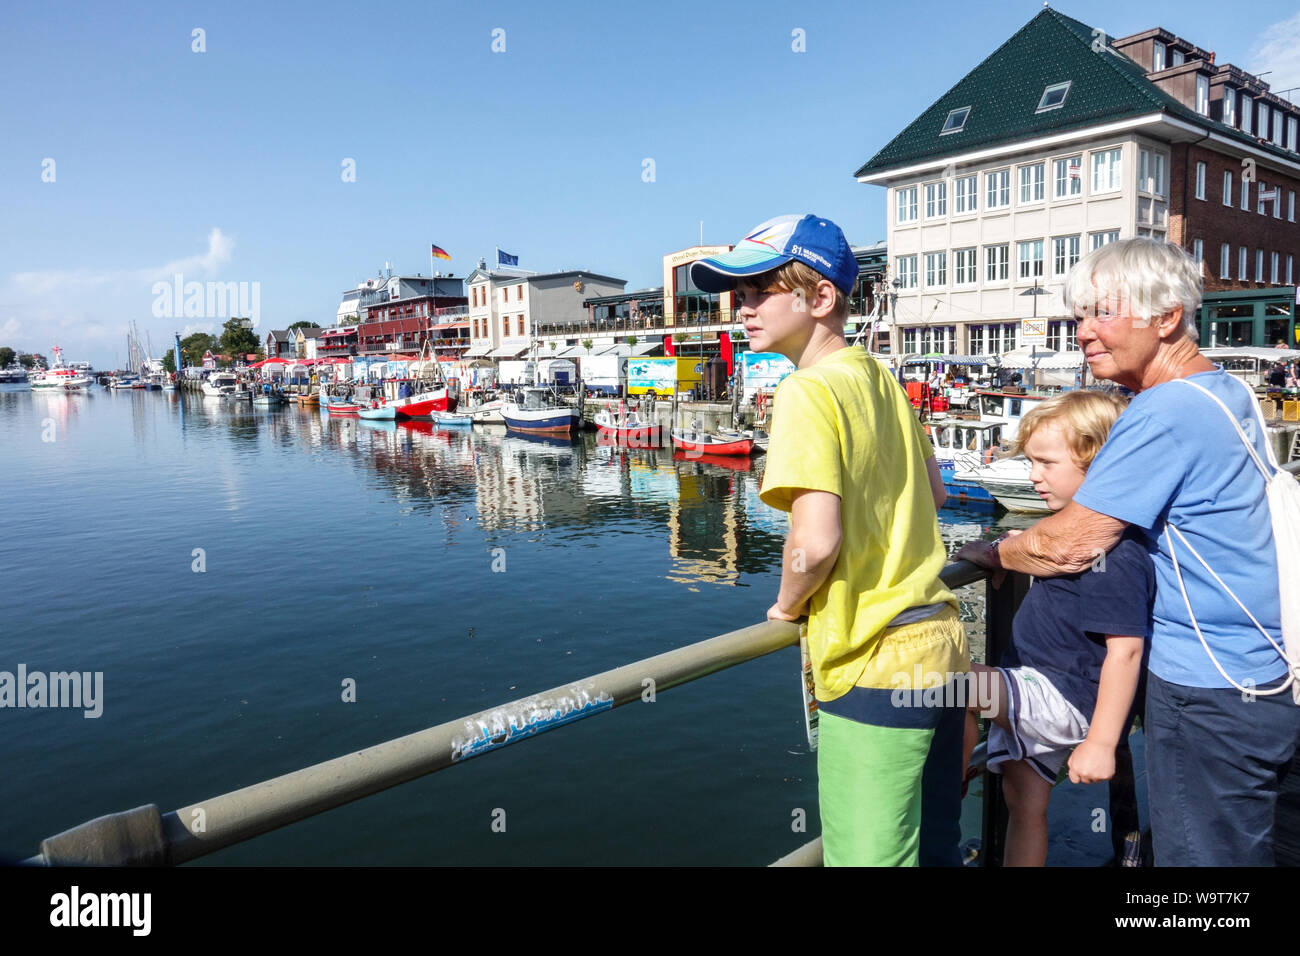 Warnemunde Alter Strom People - les touristes sur le pont regarde les bateaux amarrés dans le port de Warnemuende, Rostock Allemagne tourisme Banque D'Images